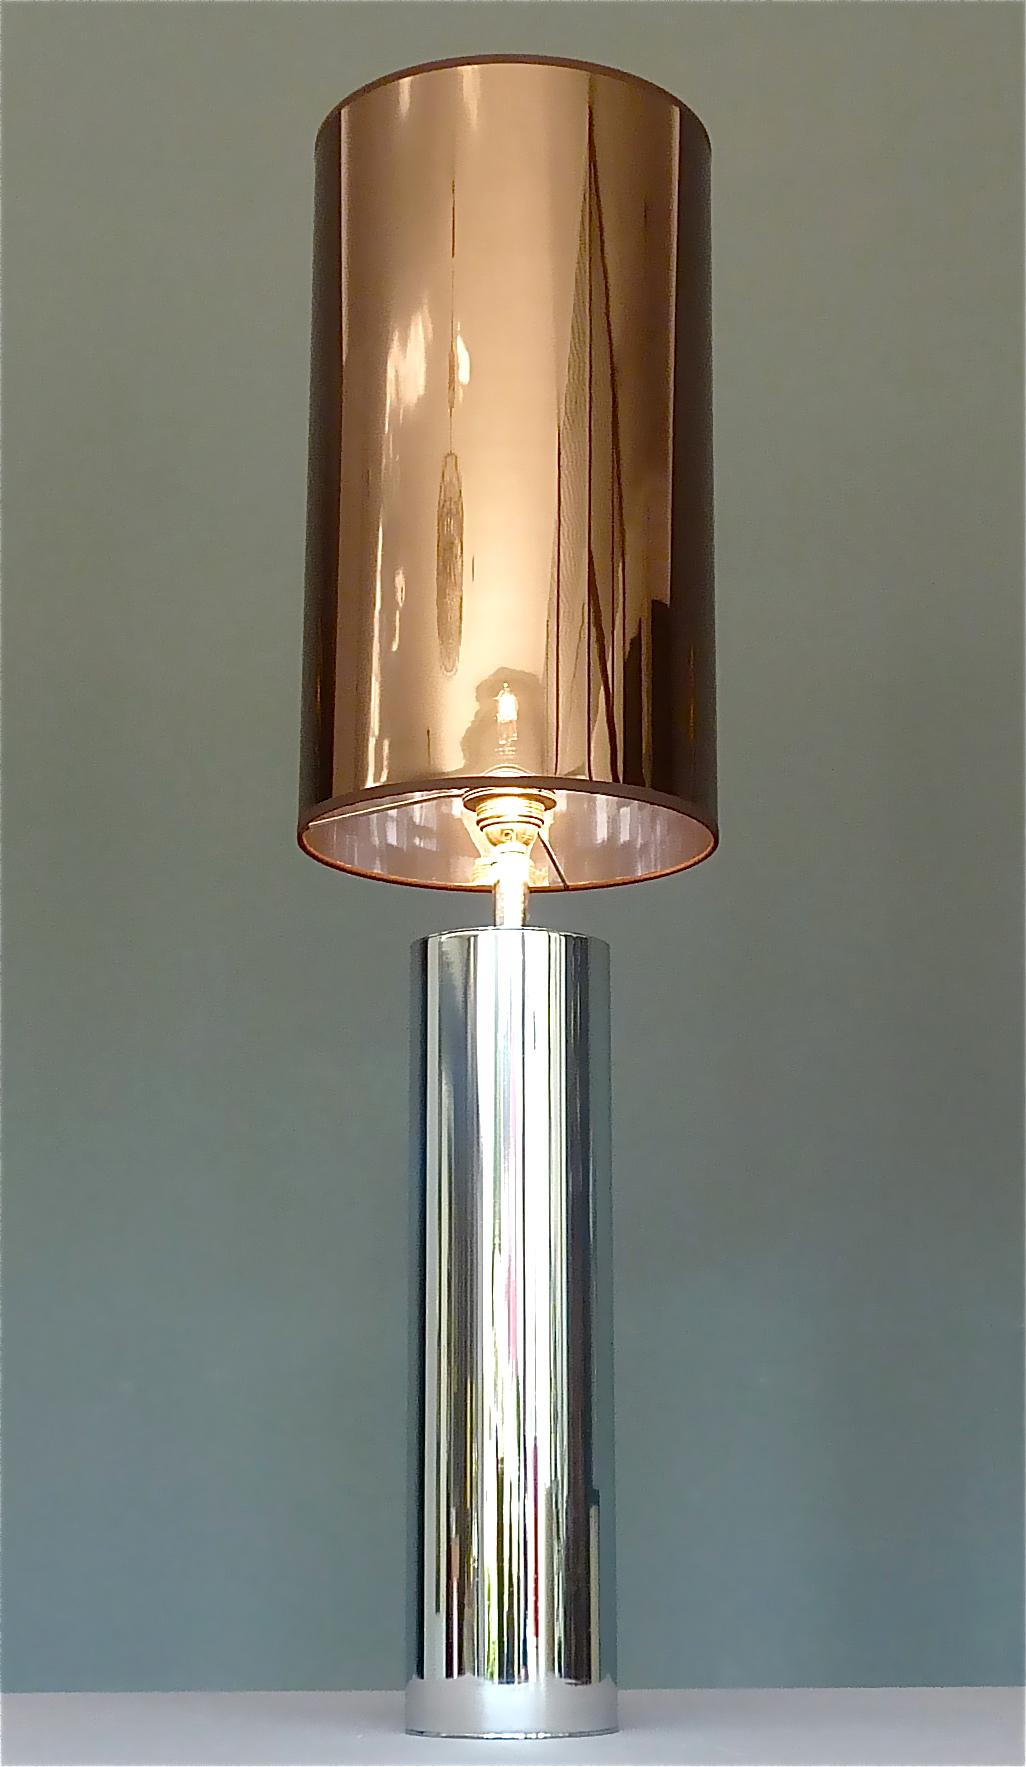 Très chic et monumentale lampe de table en acier chromé dans le style de Willy Rizzo ou Pierre Cardin, France ou Italie 1970. La base de la lampe cylindrique en forme de tube est munie d'un raccord pour une ampoule à vis standard E27 pour éclairer.